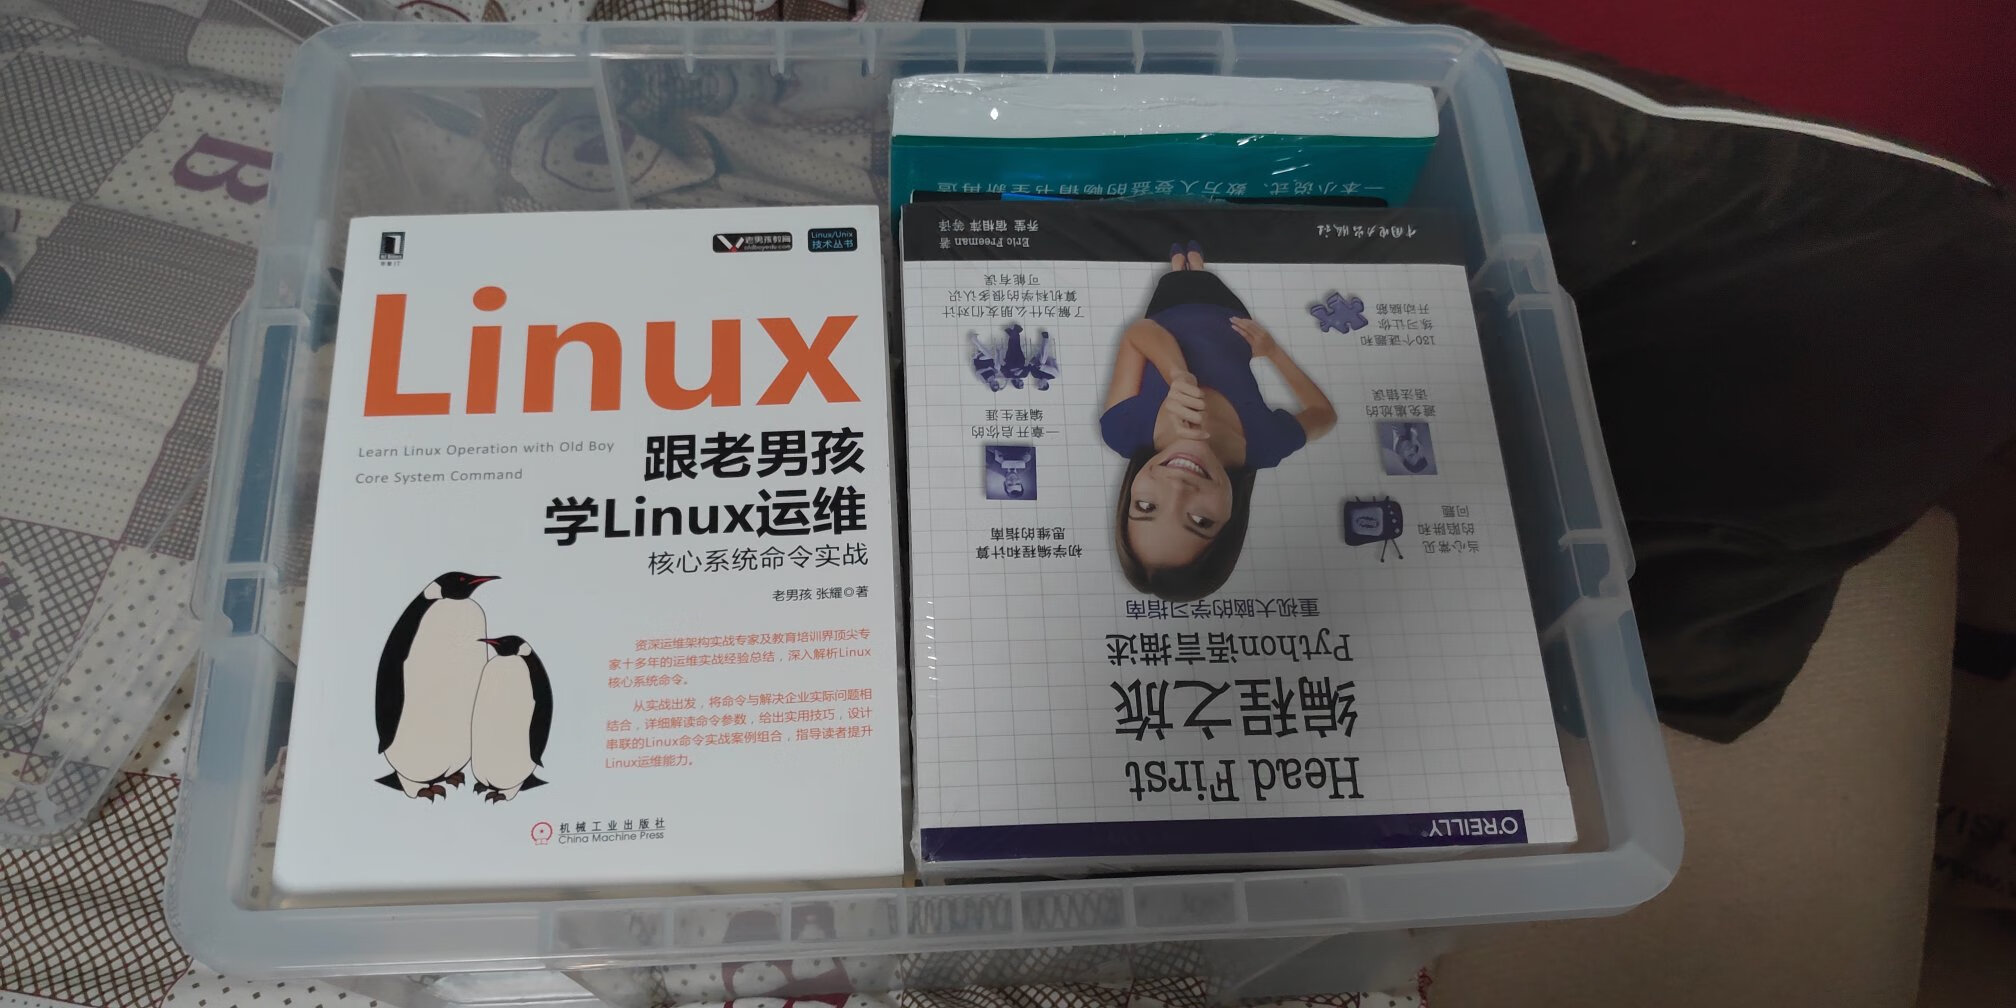 本书在linux入门方面算是比较不错的一本了，内容比较详细，可以偶尔拿出来翻翻，当工具书用。第三版是基于centos5写的，第四版这个是基于centos7写的。如果已经有了第三版，没太大必要再买这本，因为变的都是操作系统中一些操作方式。但是之前如果没买过第三版，又正在找一本入门书，那我强烈推荐该书。我以前是买过第三版的，但是朋友相中了，拿去看，这次就顺便买了个新版。本书模块化的讲了一下centos系统的几大应用部分，如：文件，目录，磁盘格式，shell，权限管理等。希望本书在你的linux之旅中能助你一臂之